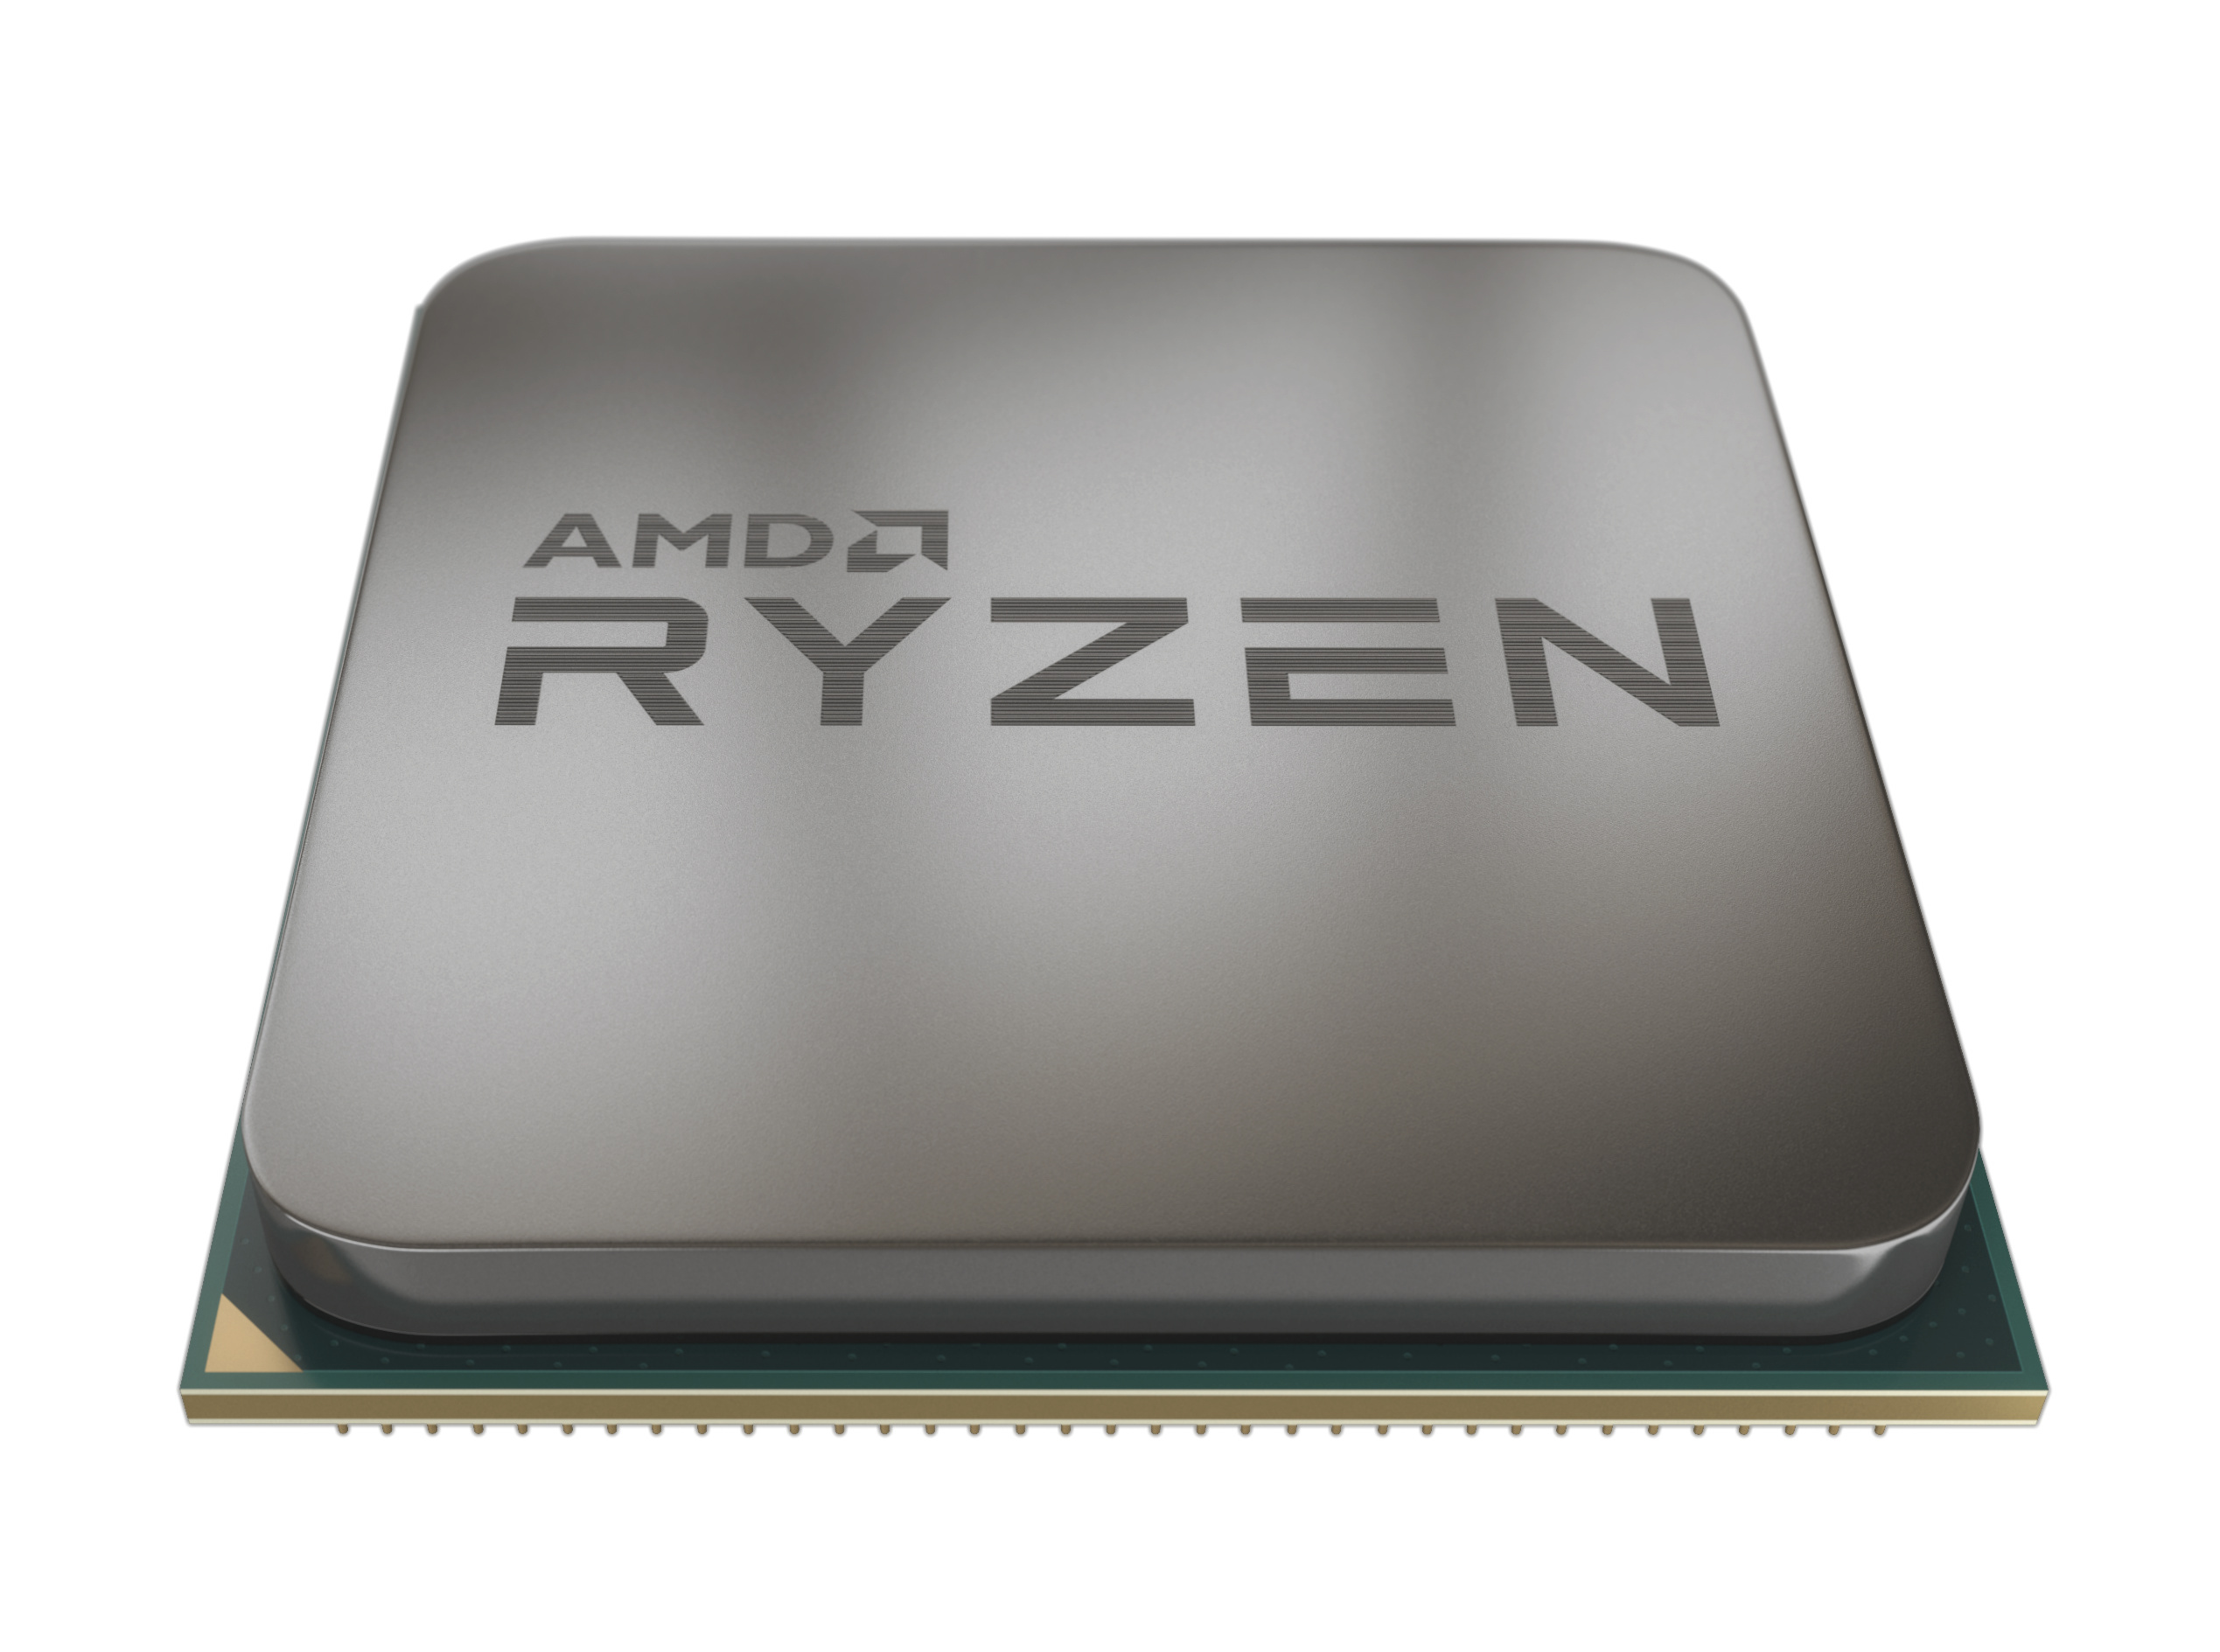 Райзен 9 купить. AMD Ryzen 5 3600. AMD Ryzen 5 2600. AMD Ryzen 5 3600 OEM. Процессор AMD Ryzen 5 3600x OEM.